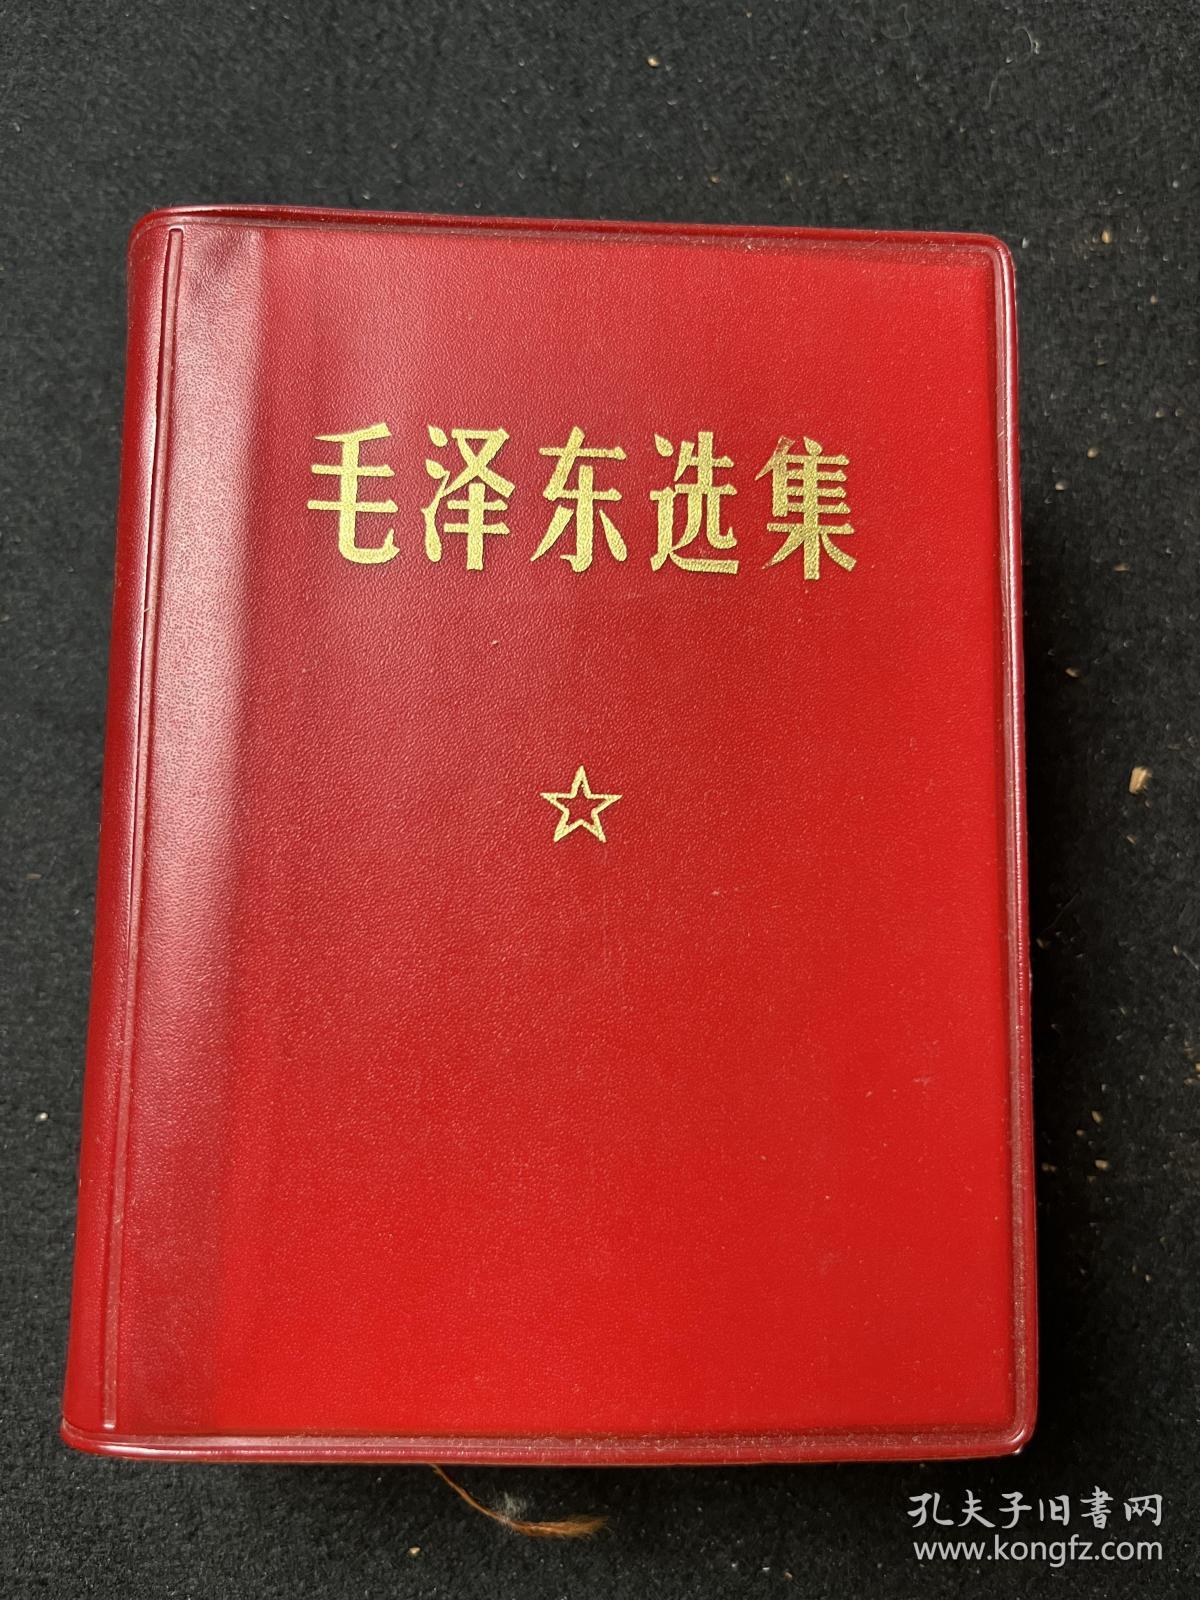 毛泽东选集 （一卷本）红塑皮 1964年4月第一版1967年11月改横排袖珍本 1968年8月北京市第一次印刷